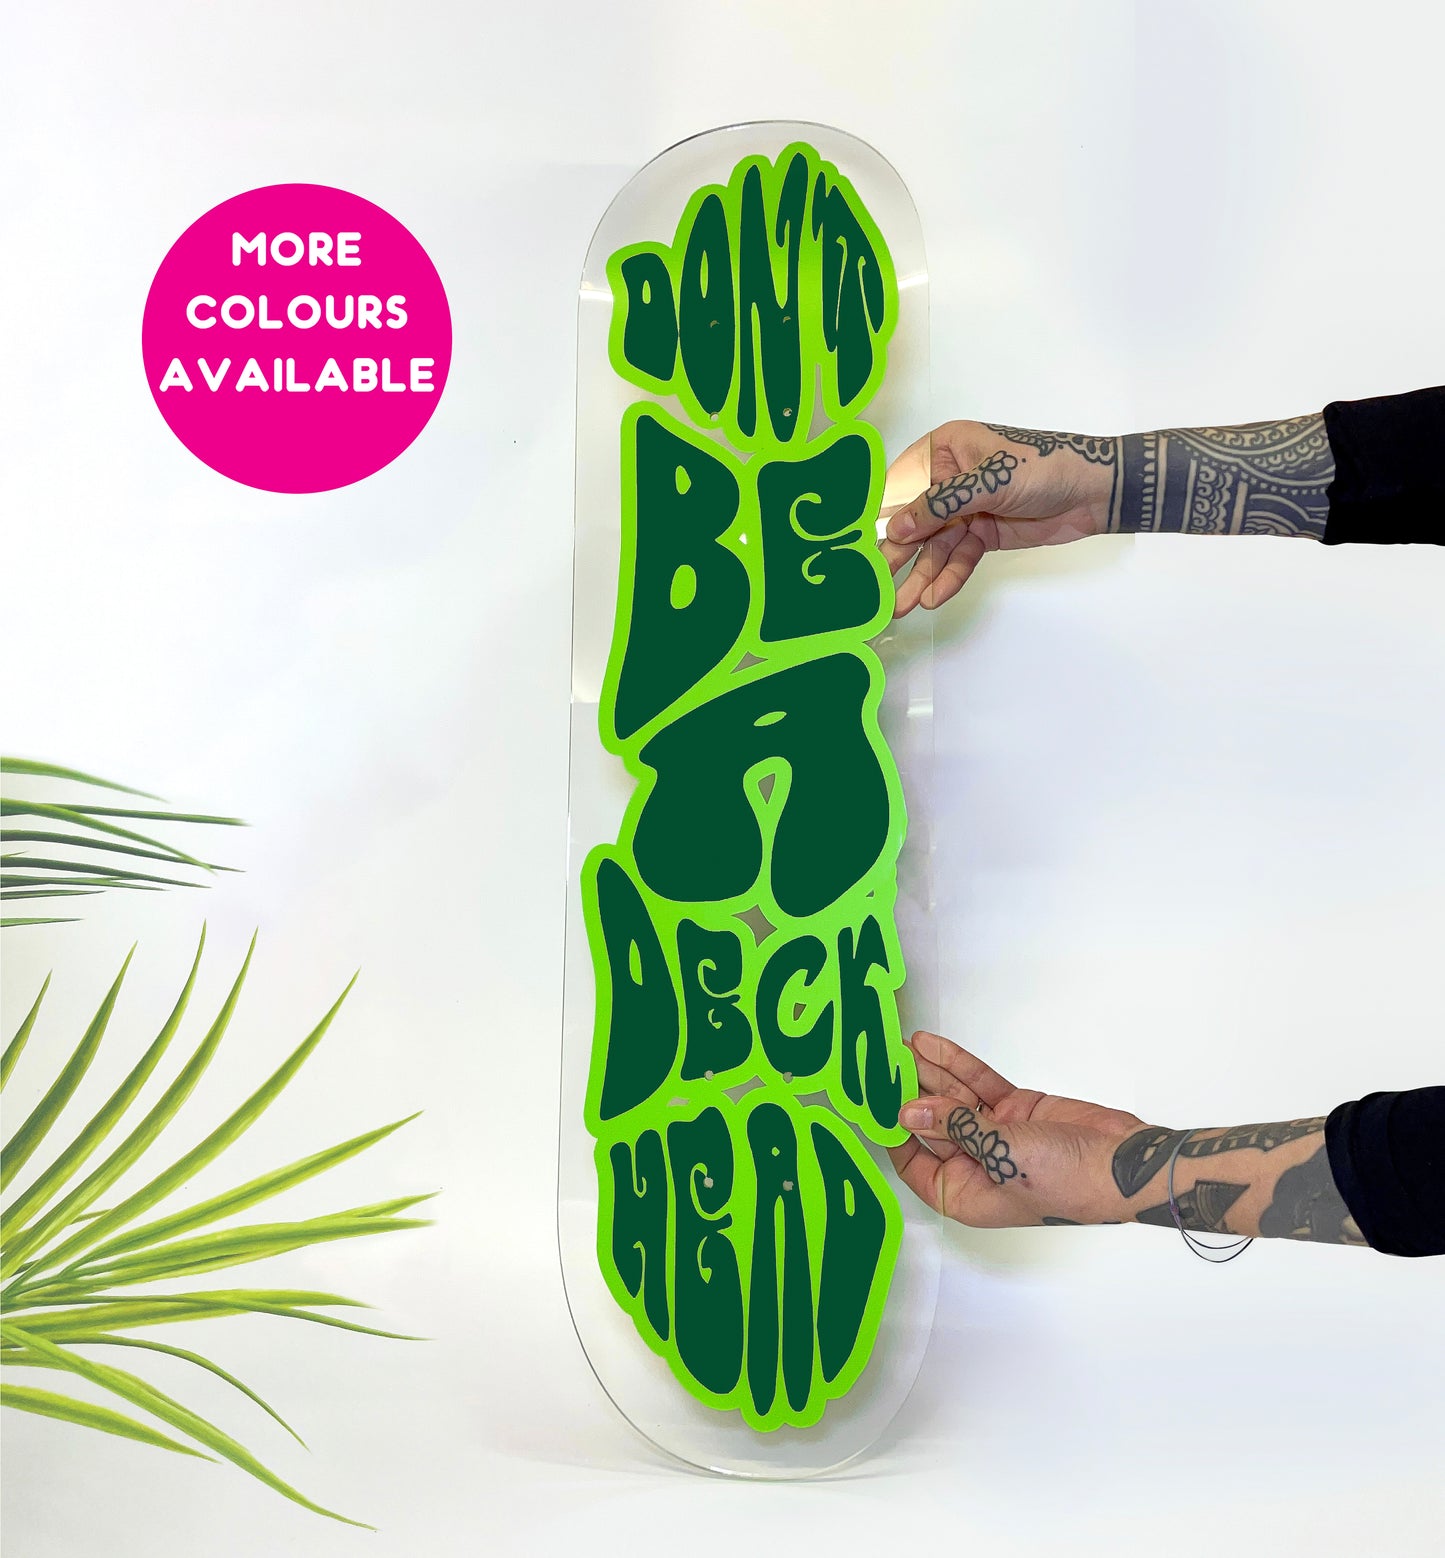 Don't be a deck head clear acrylic skateboard deck